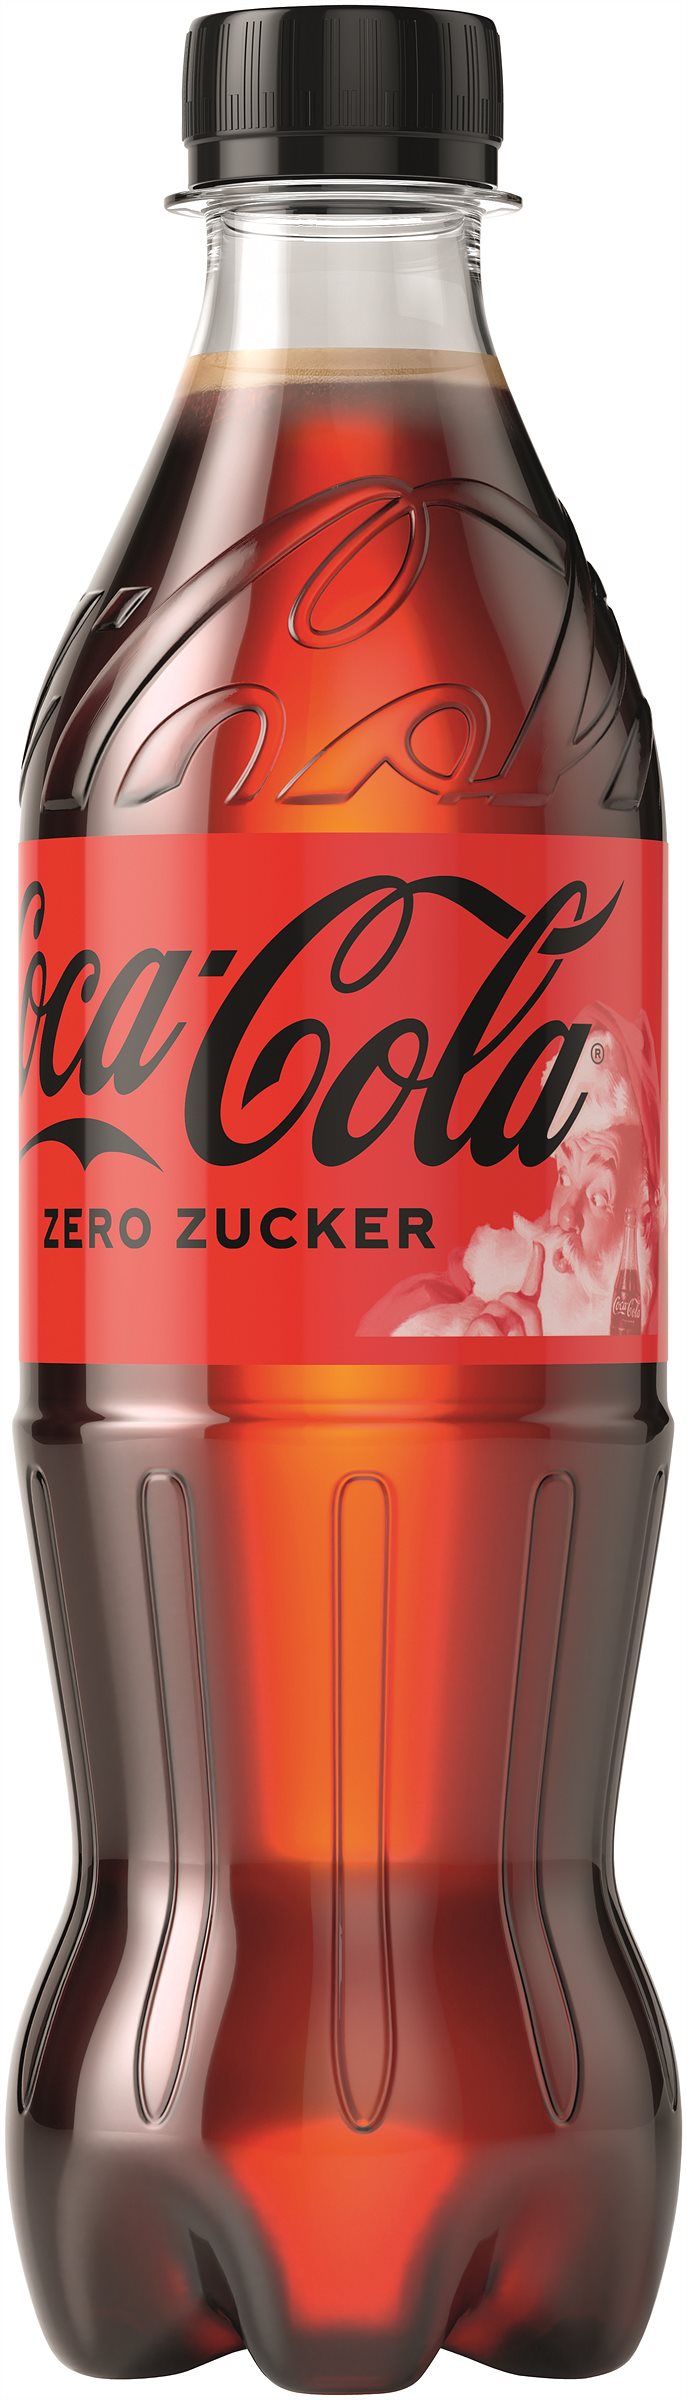 Coca-Cola zero Zucker PET-Flasche